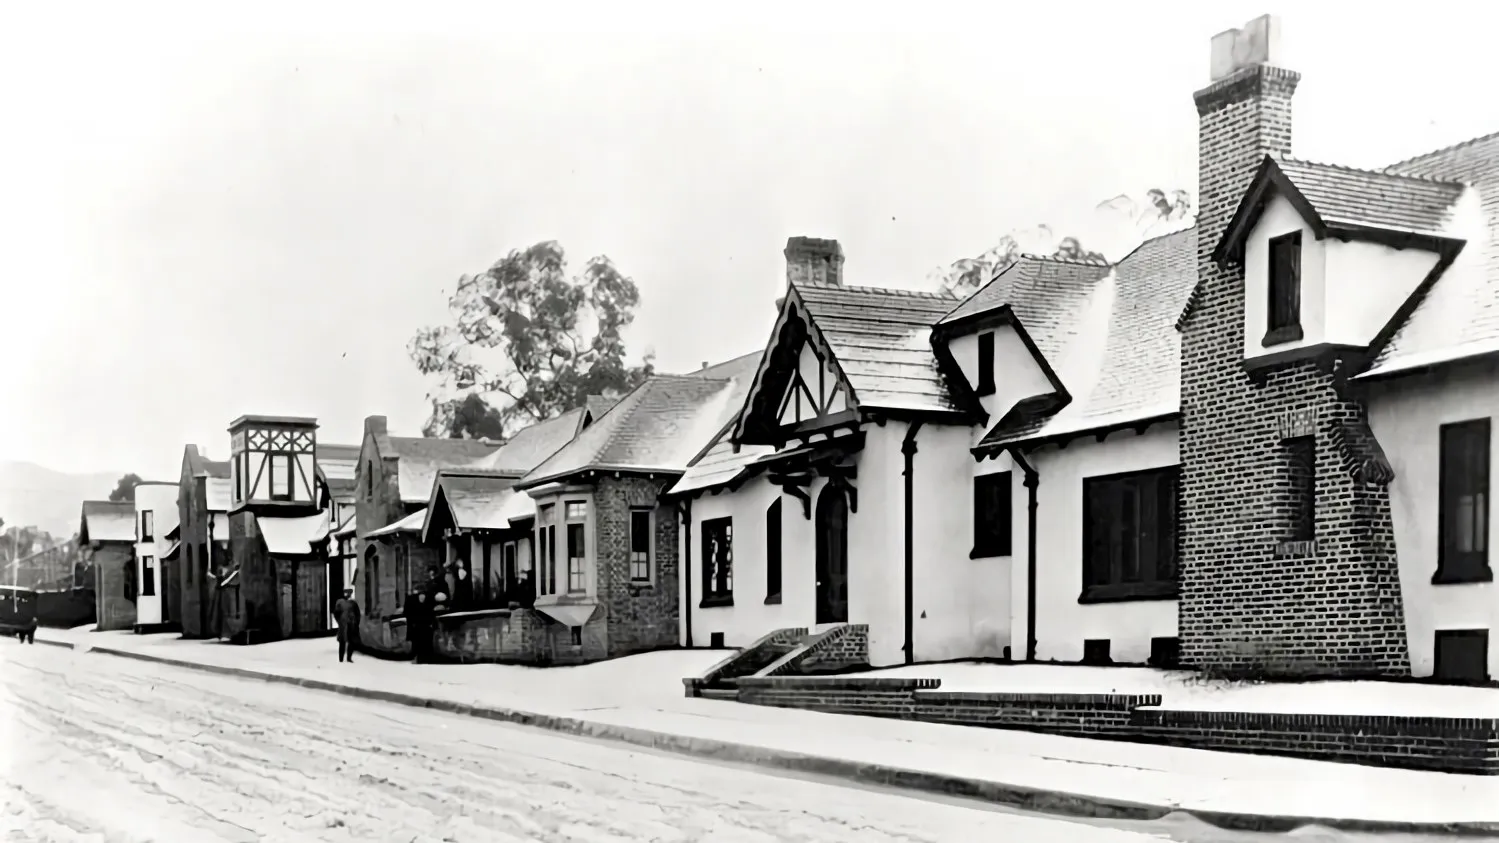 Chaplin studios in the 1920s